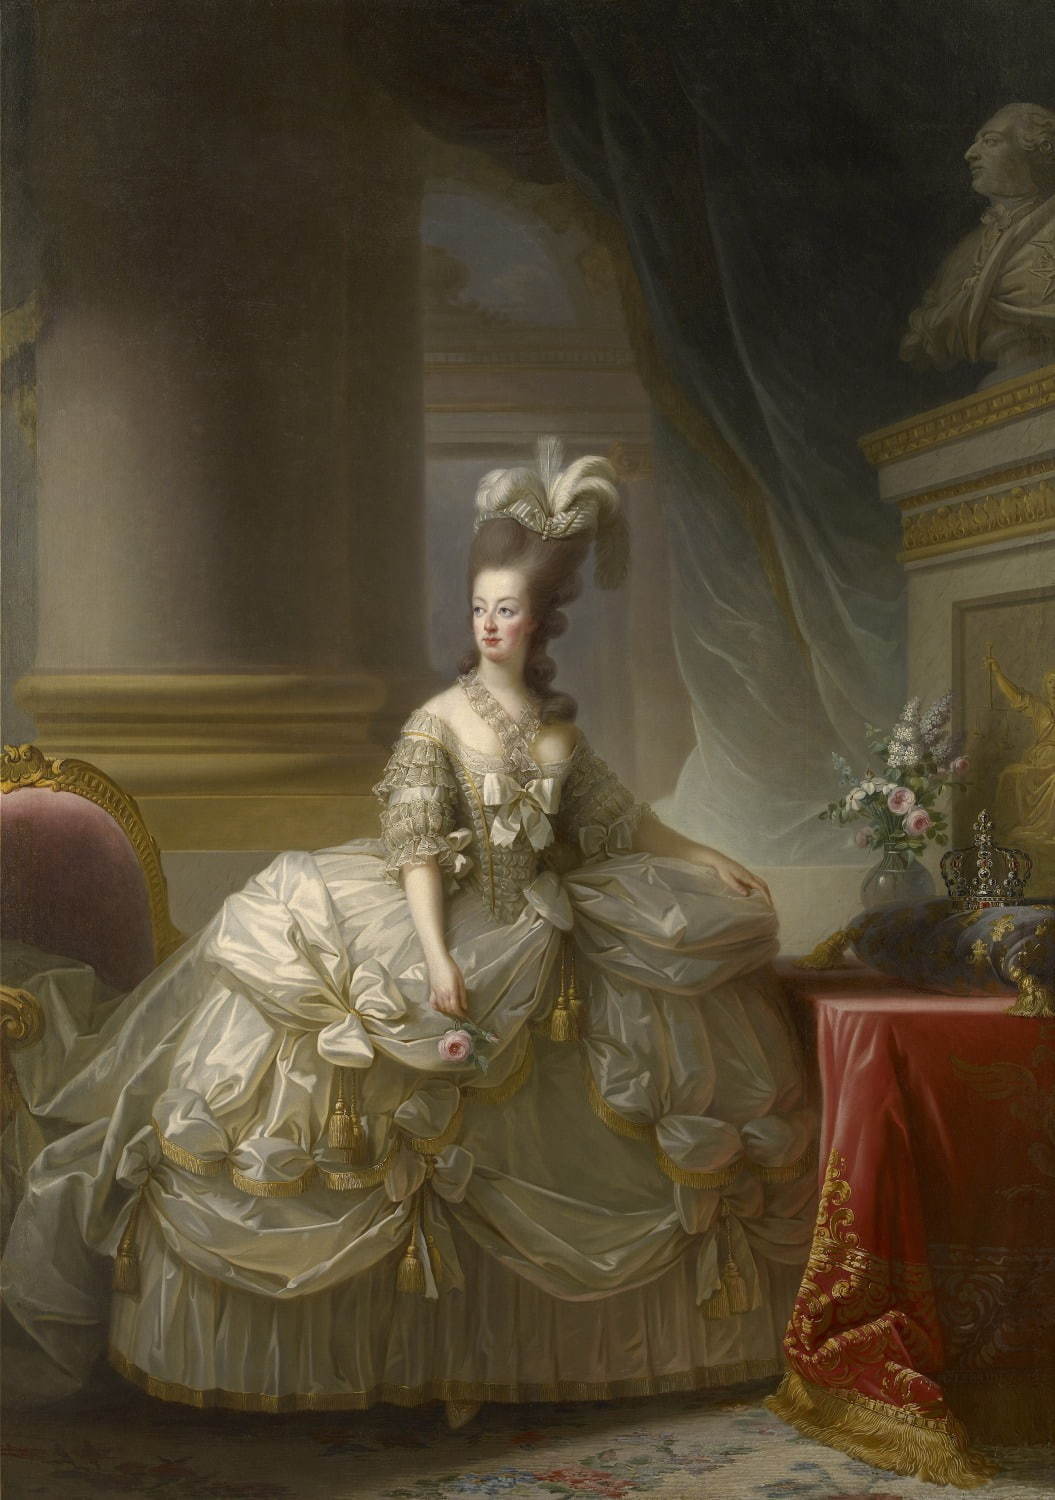 マリー・ルイーズ・エリザベト・ヴィジェ＝ルブラン《フランス王妃マリー・アントワネットの肖像》 1778年、油彩／カンヴァス ウィーン美術史美術館 Kunsthistorisches Museum, Wien